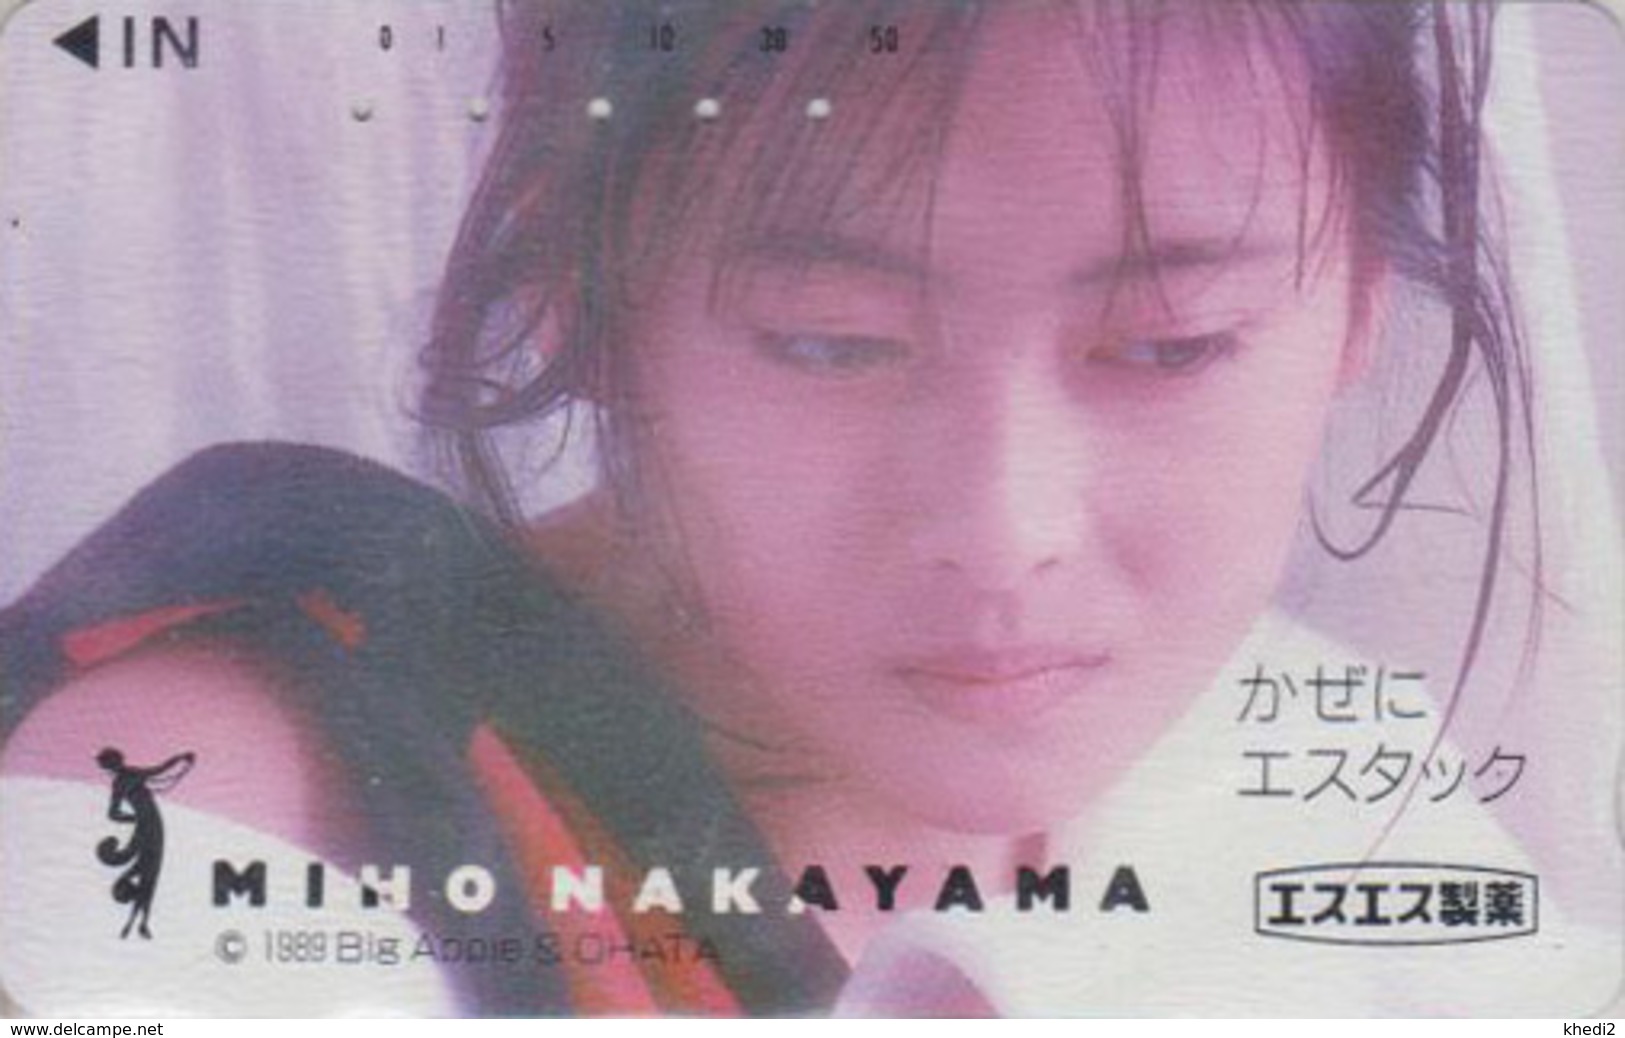 Télécarte Japon / 110-011 - Femme Cinema - MIHO NAKAYAMA - Music & Actress Girl Japan Phonecard - 3765 - Film